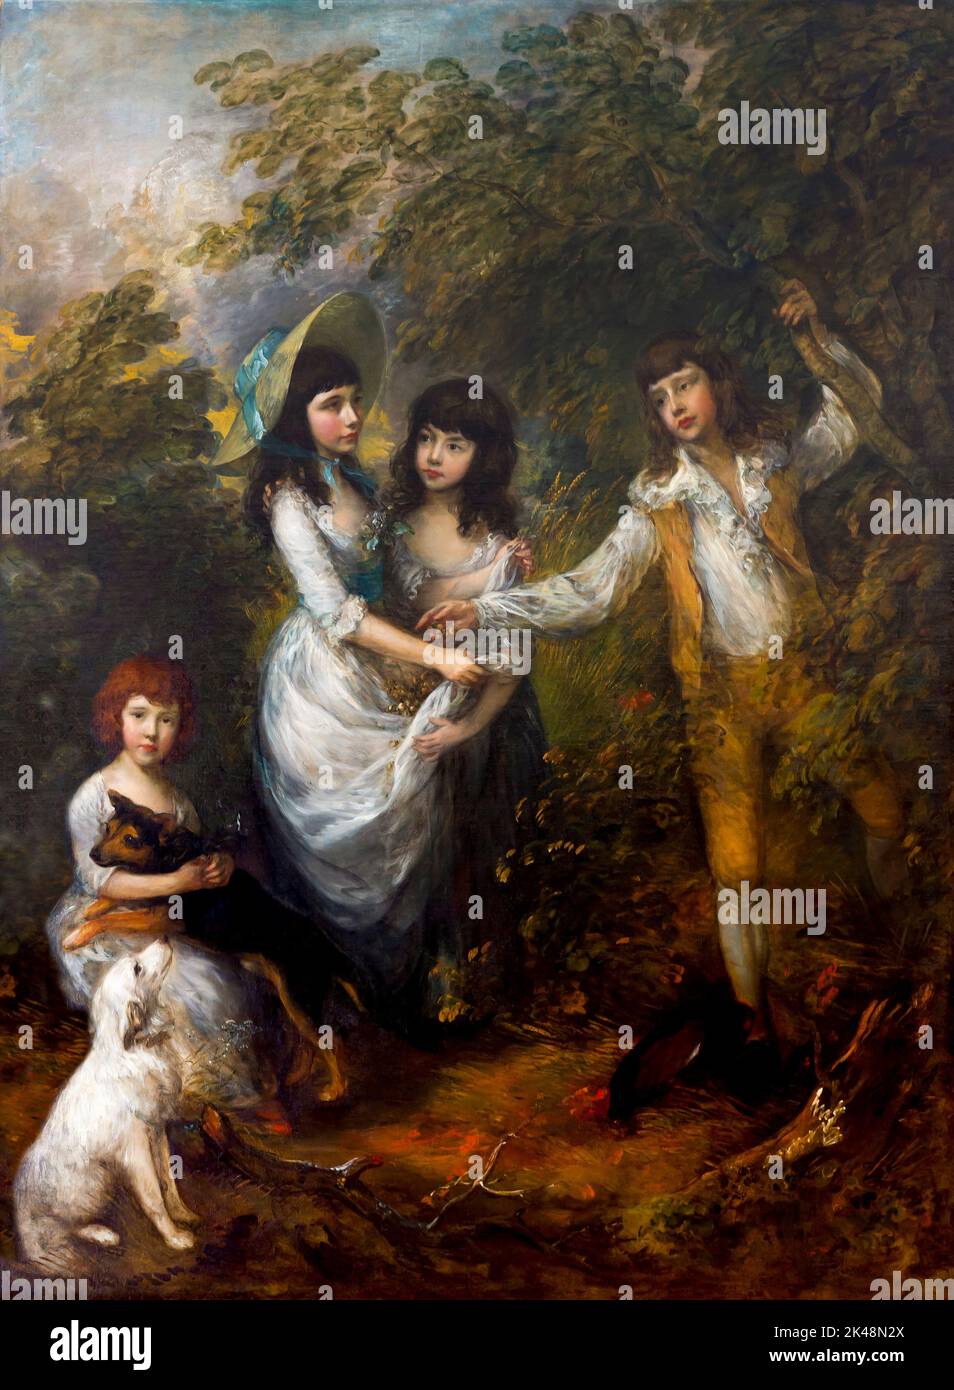 The Marsham Children, Thomas Gainsborough, 1787, Gemaldegalerie, Berlin, Germany, Europe Stock Photo